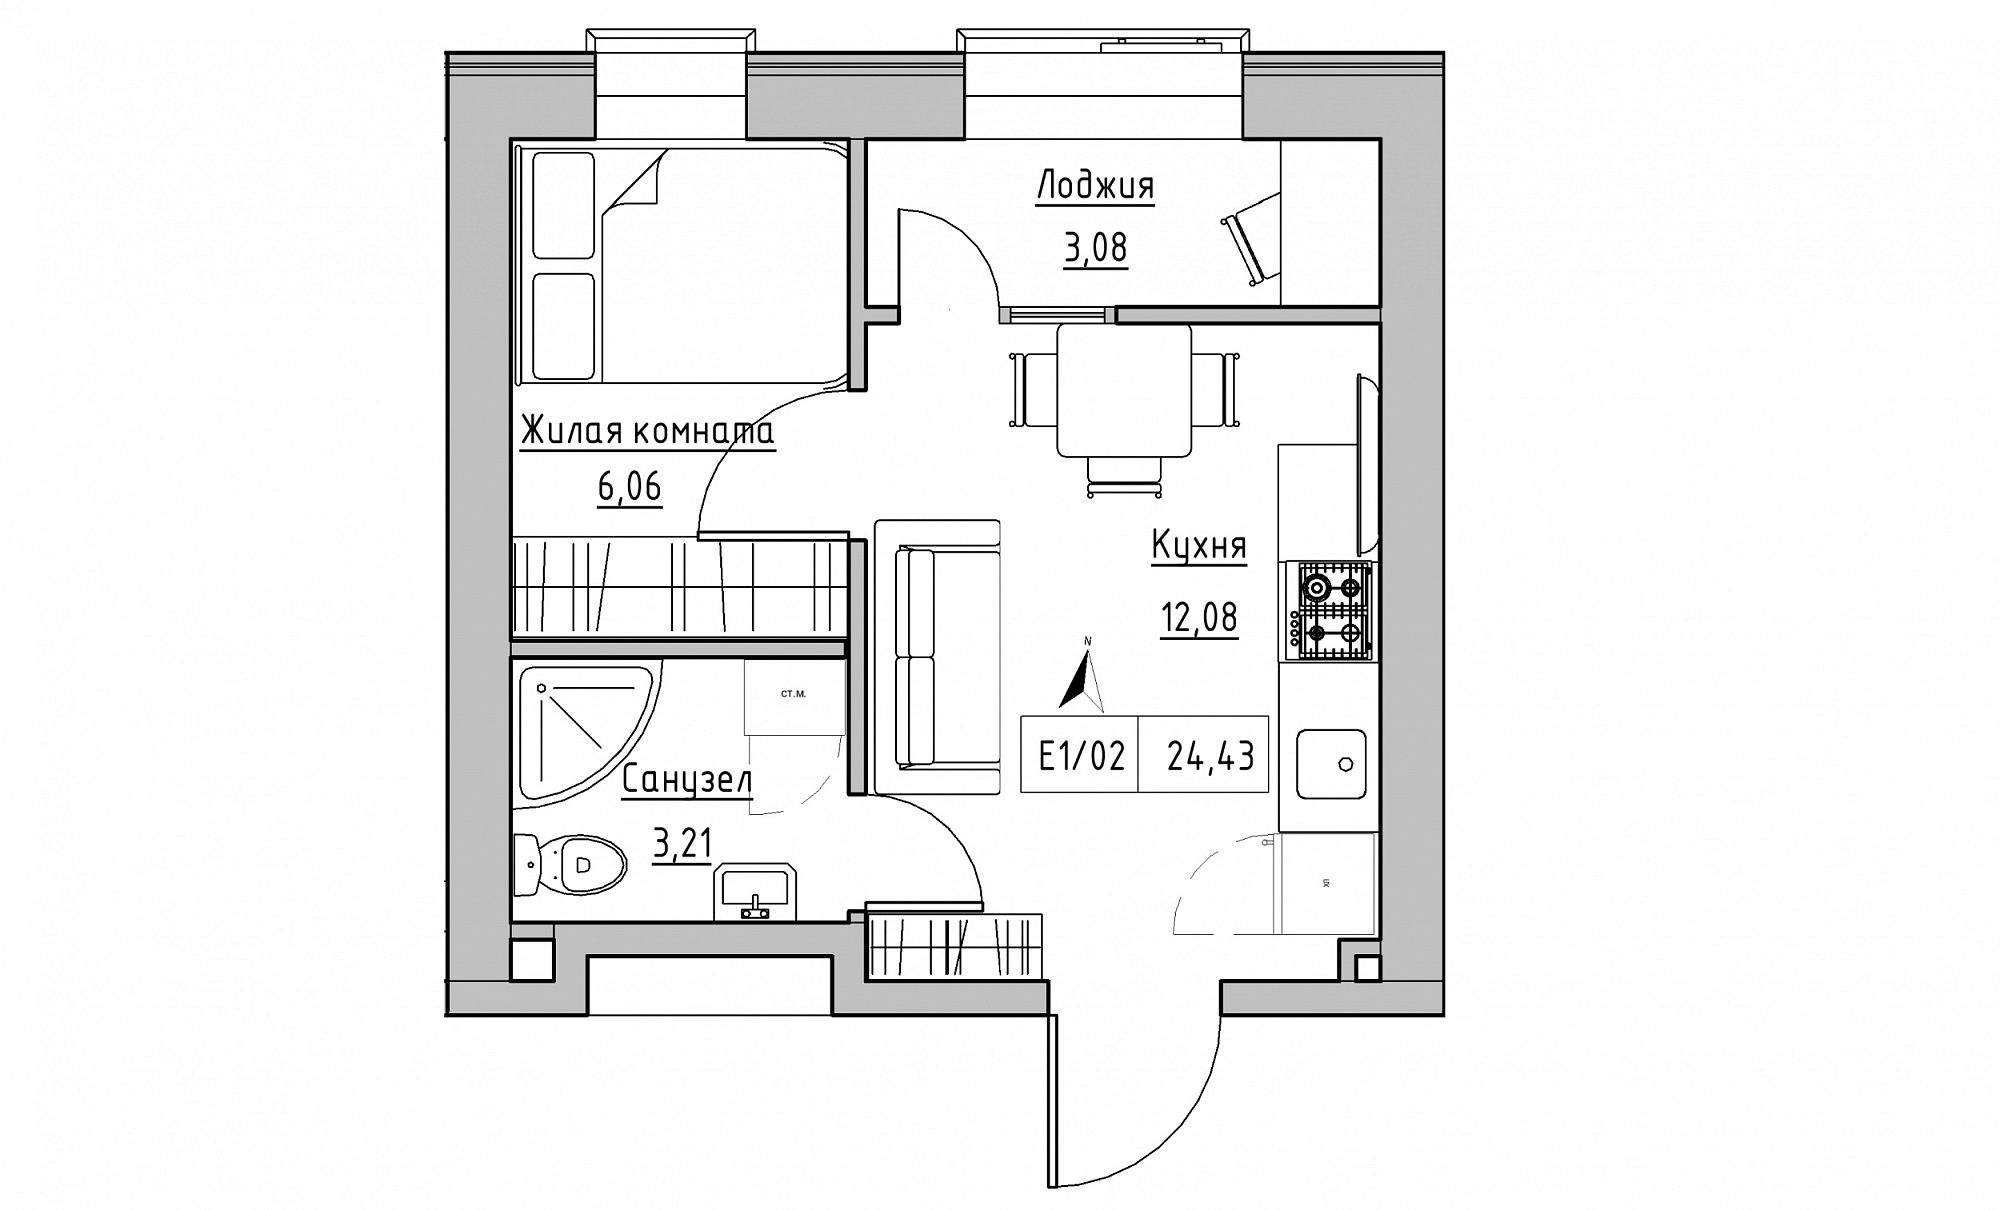 Планування 1-к квартира площею 24.43м2, KS-015-02/0014.